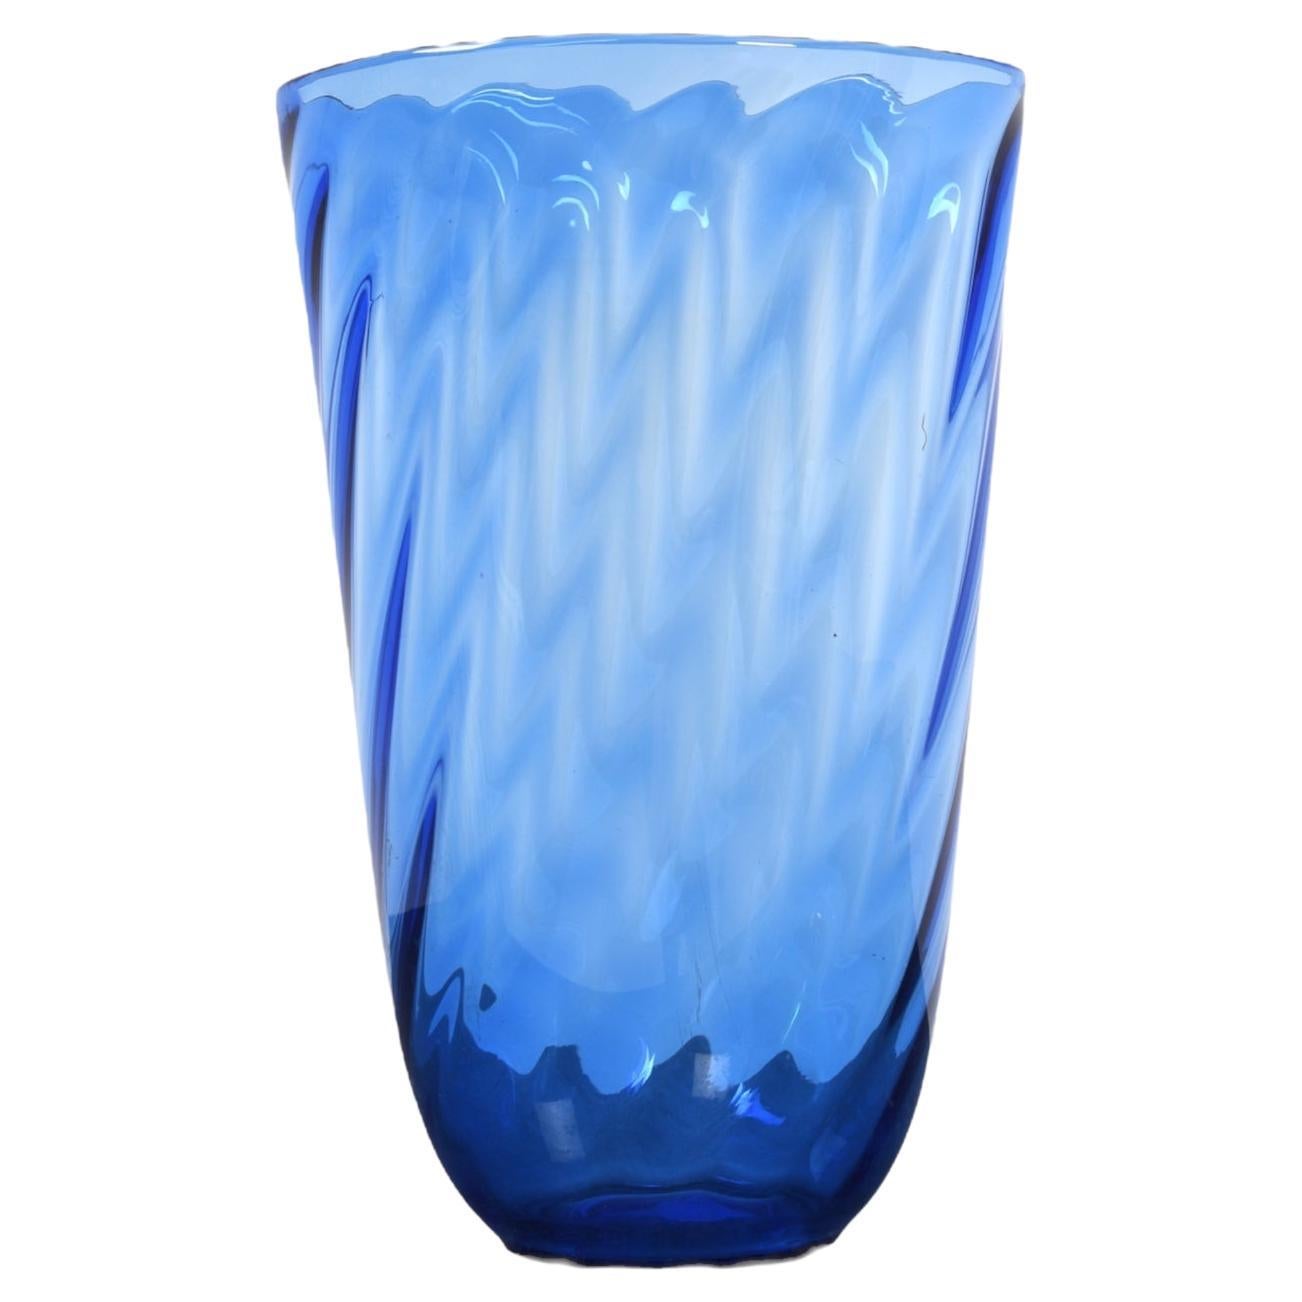 Blue glass vase by Monica Bratt for Reijmyre Glasbruk, 1930s